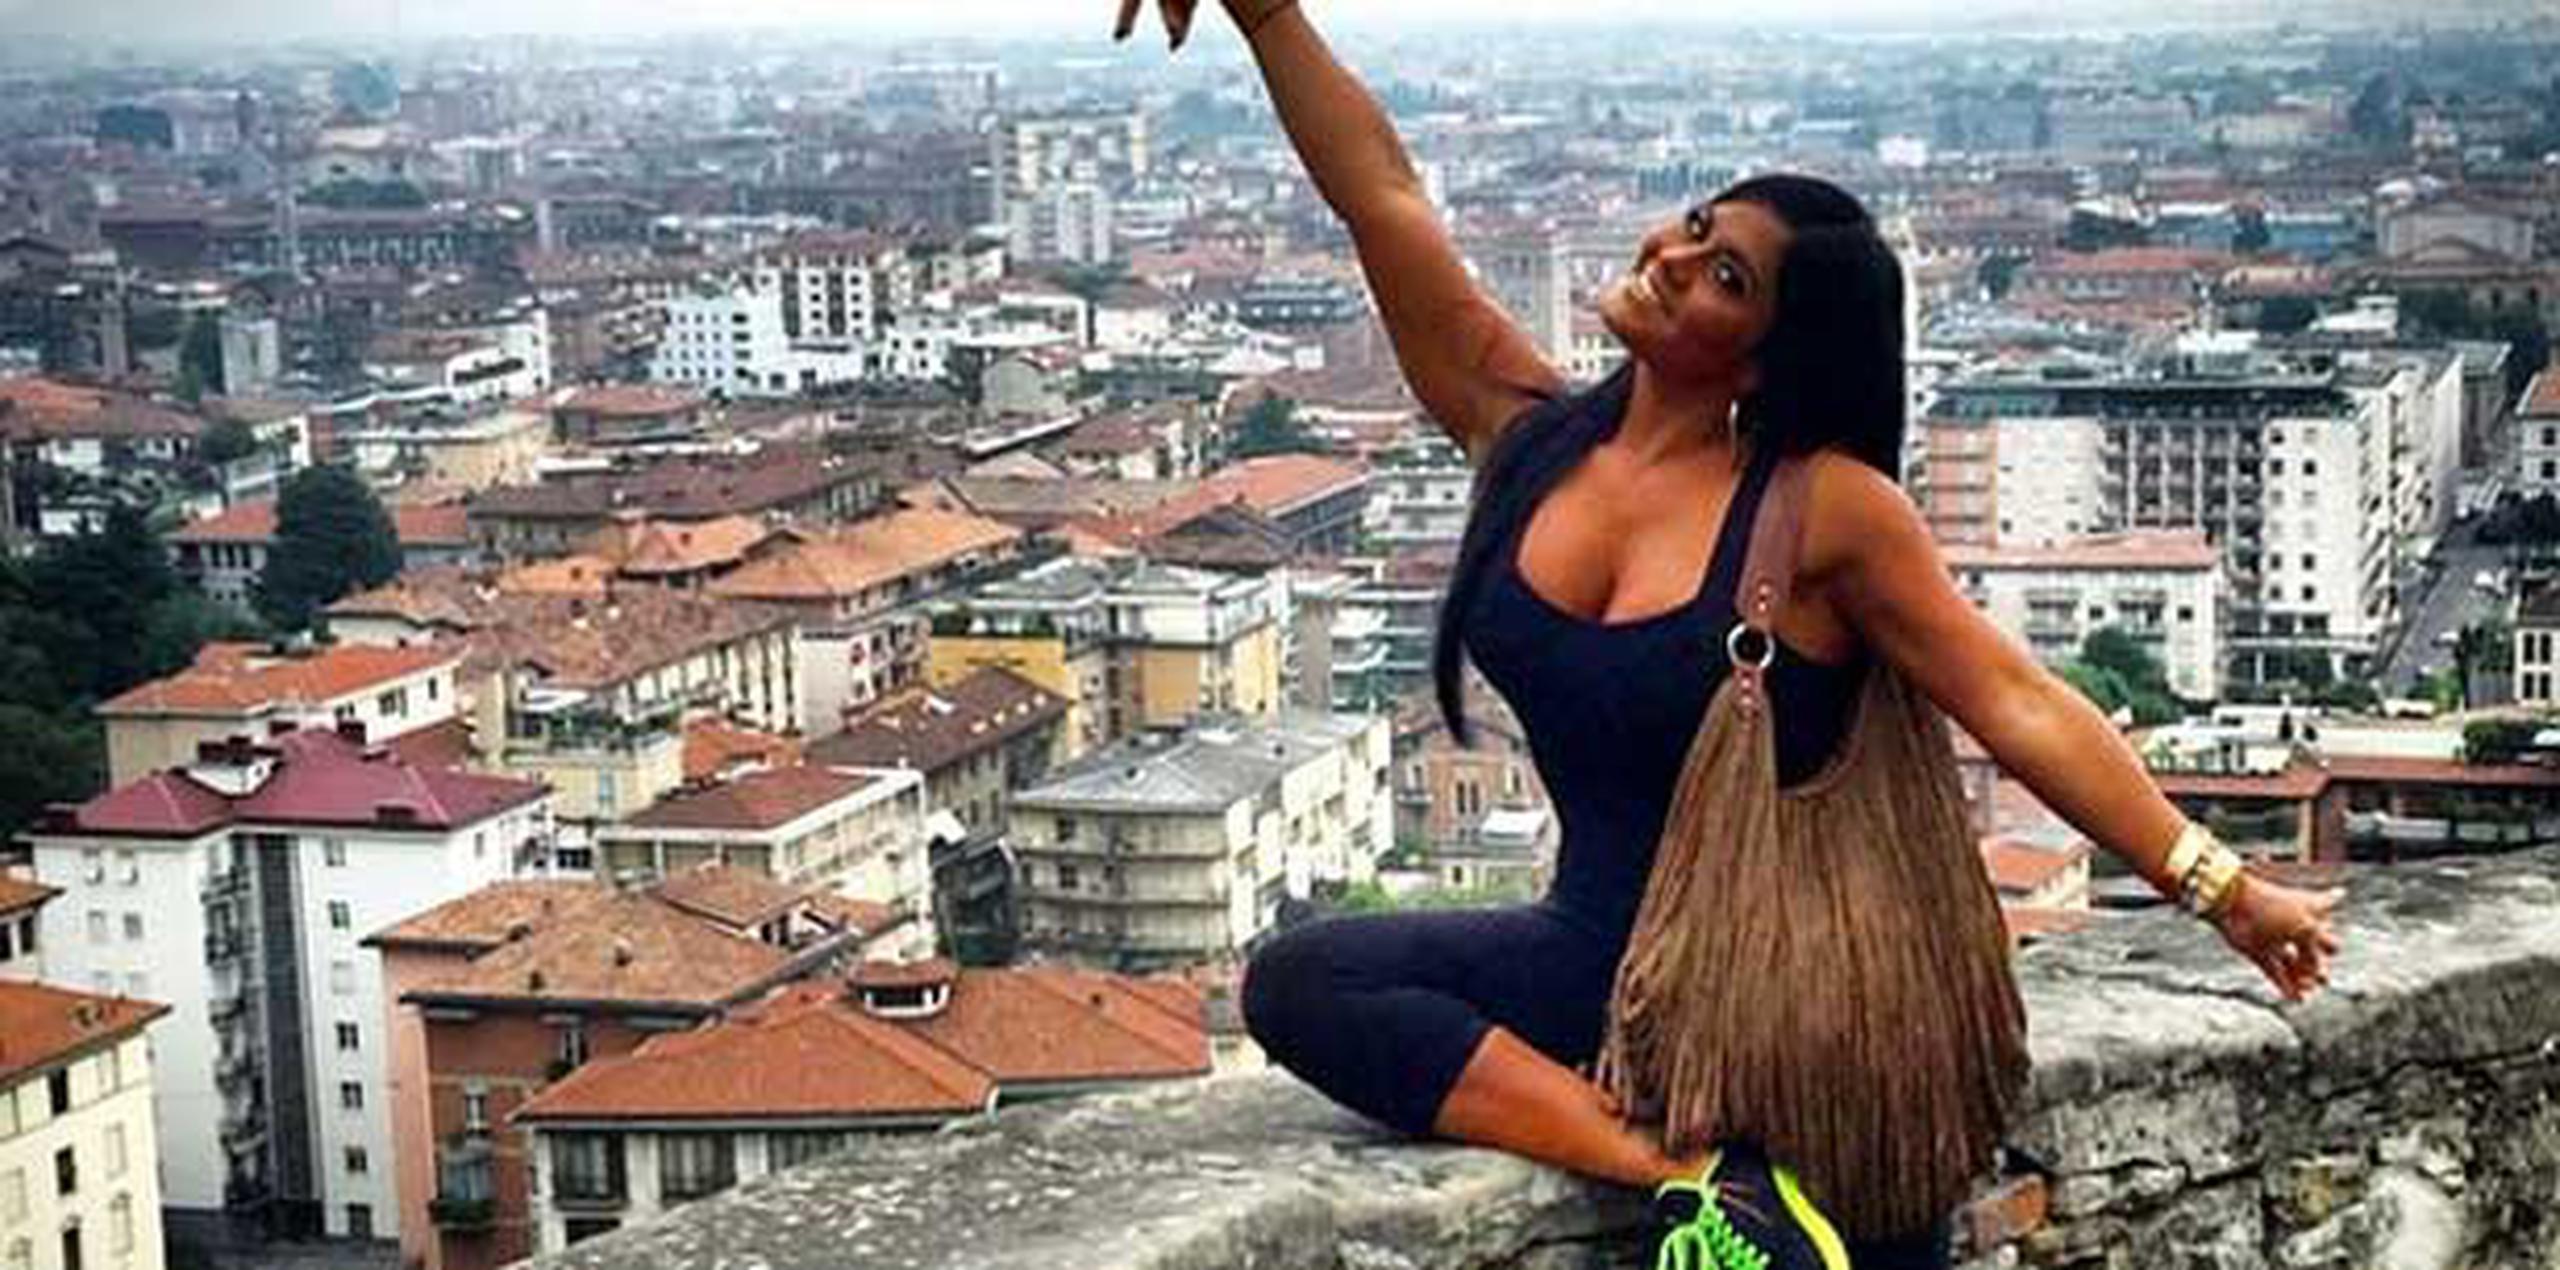 Durante los recorridos por Milán, Verona y Bergamo la boricua se bajó de sus “tacas” y se puso un calzado más cómodo.(Instagram)